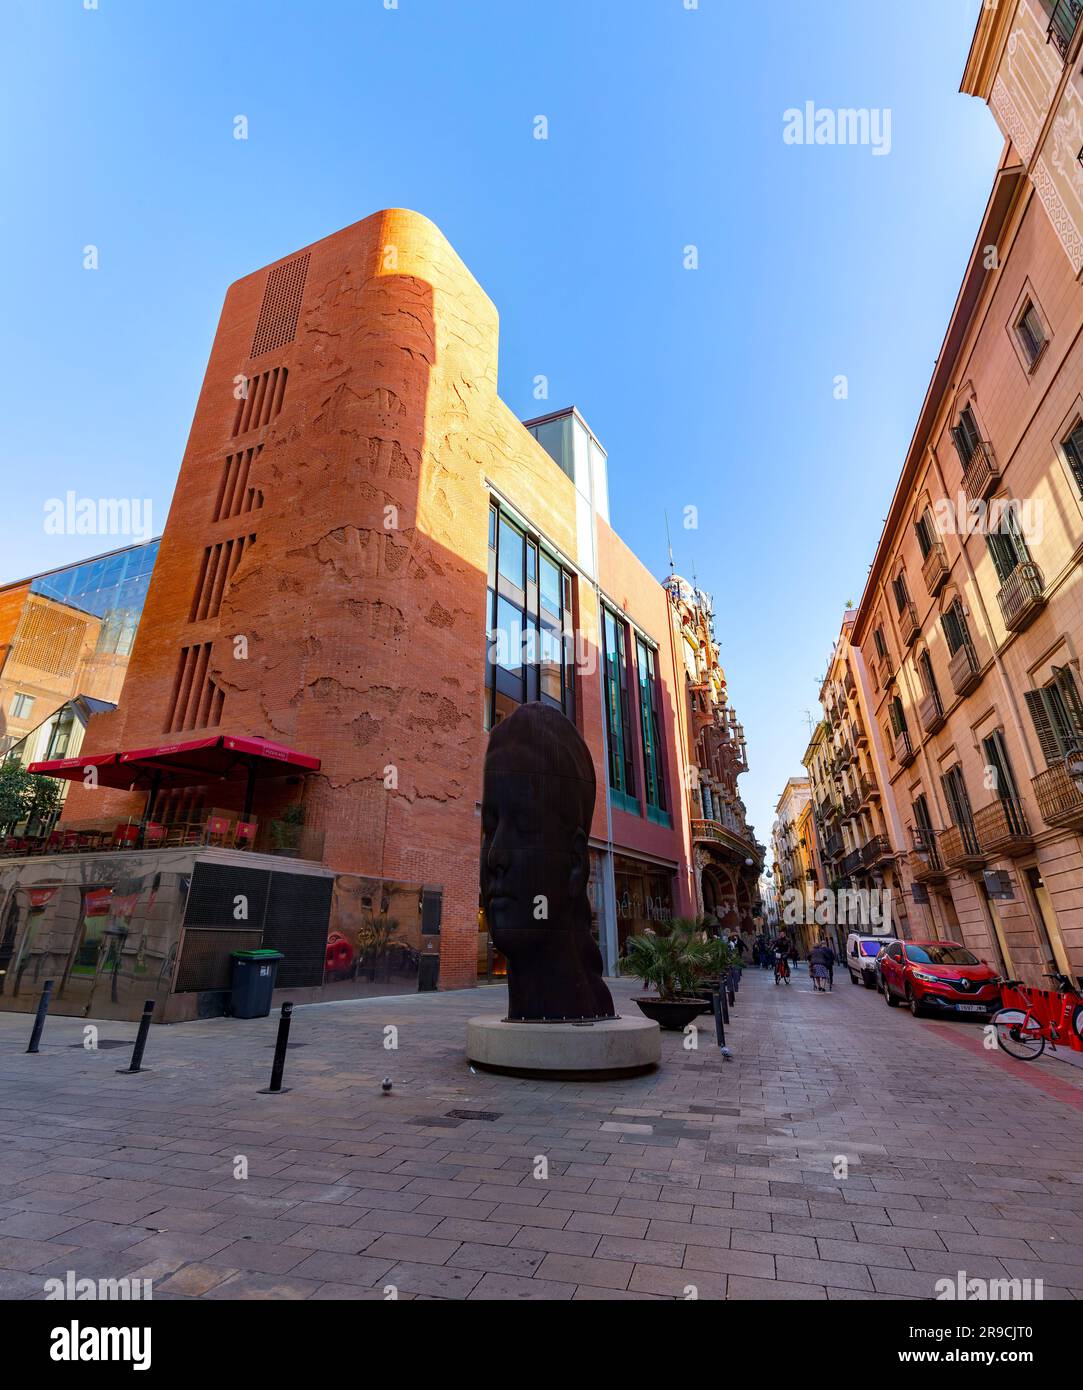 Barcelone, Espagne - 10 FÉVRIER 2022: Palau de la Musica Catalana est une salle de concert conçue dans le style moderniste catalan, construite entre 1905 et 1908. Banque D'Images